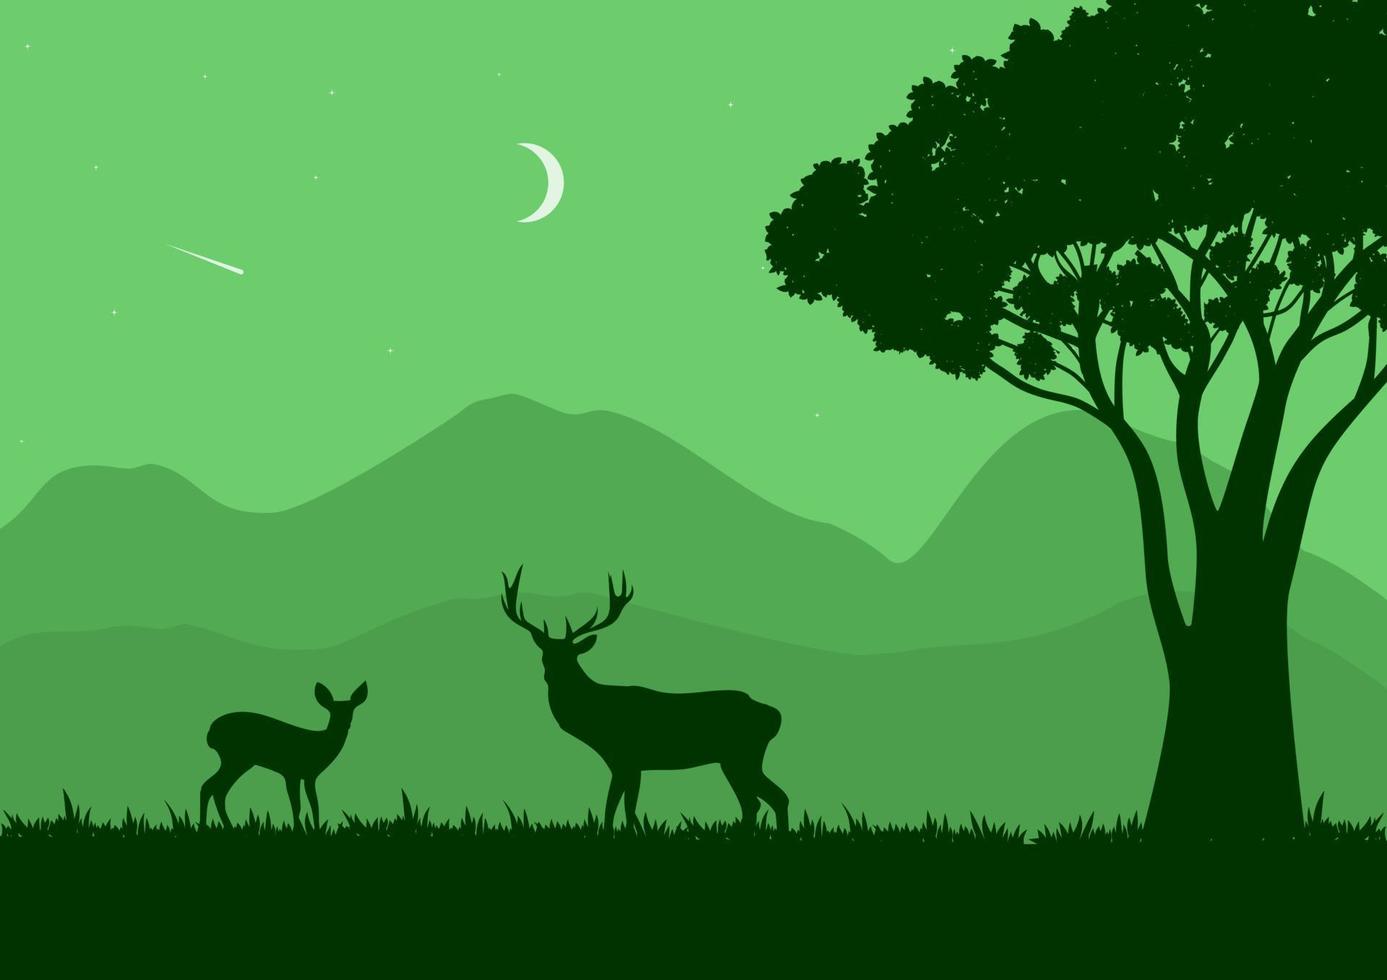 Wildtierlandschaftsvektorillustration mit einer grünen Silhouette vektor